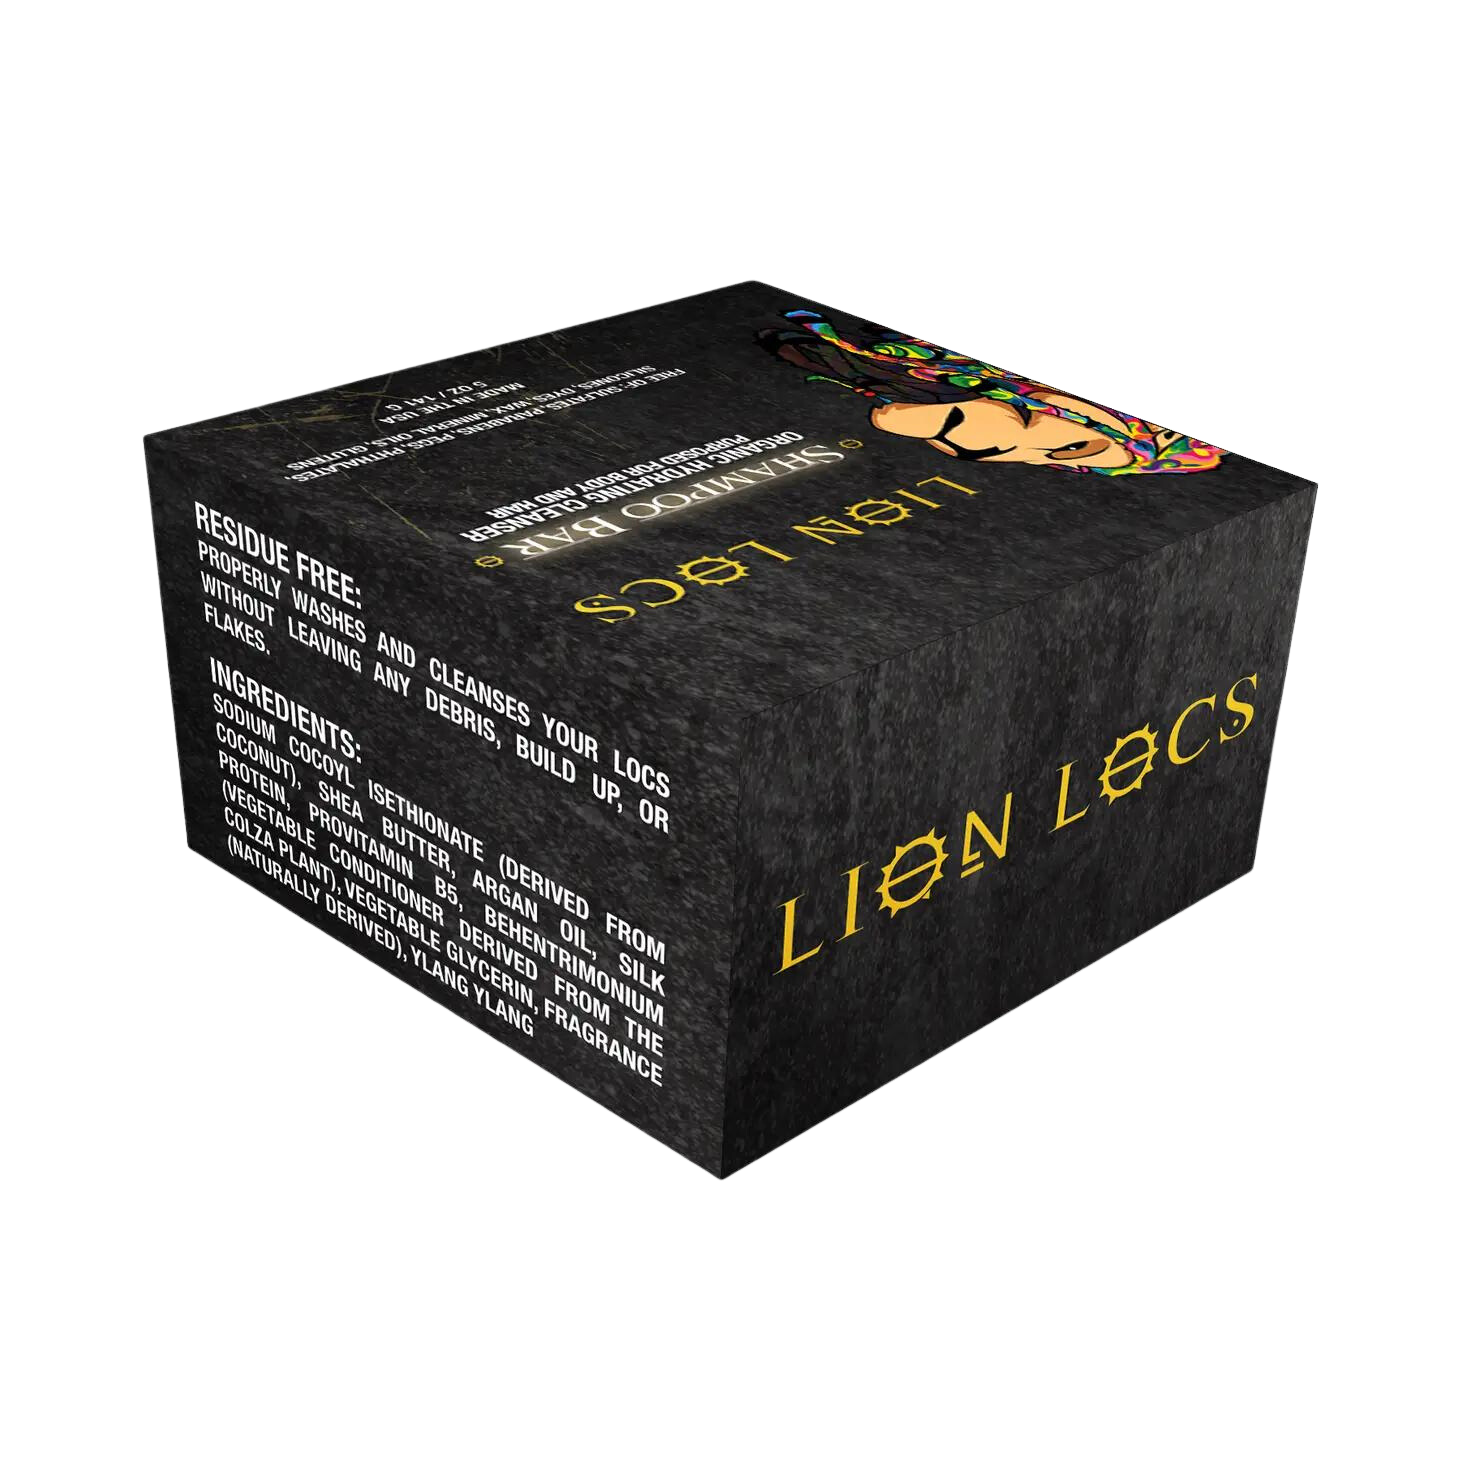 Dreadlock Shampoo Bar & Conditioner – LionLocs